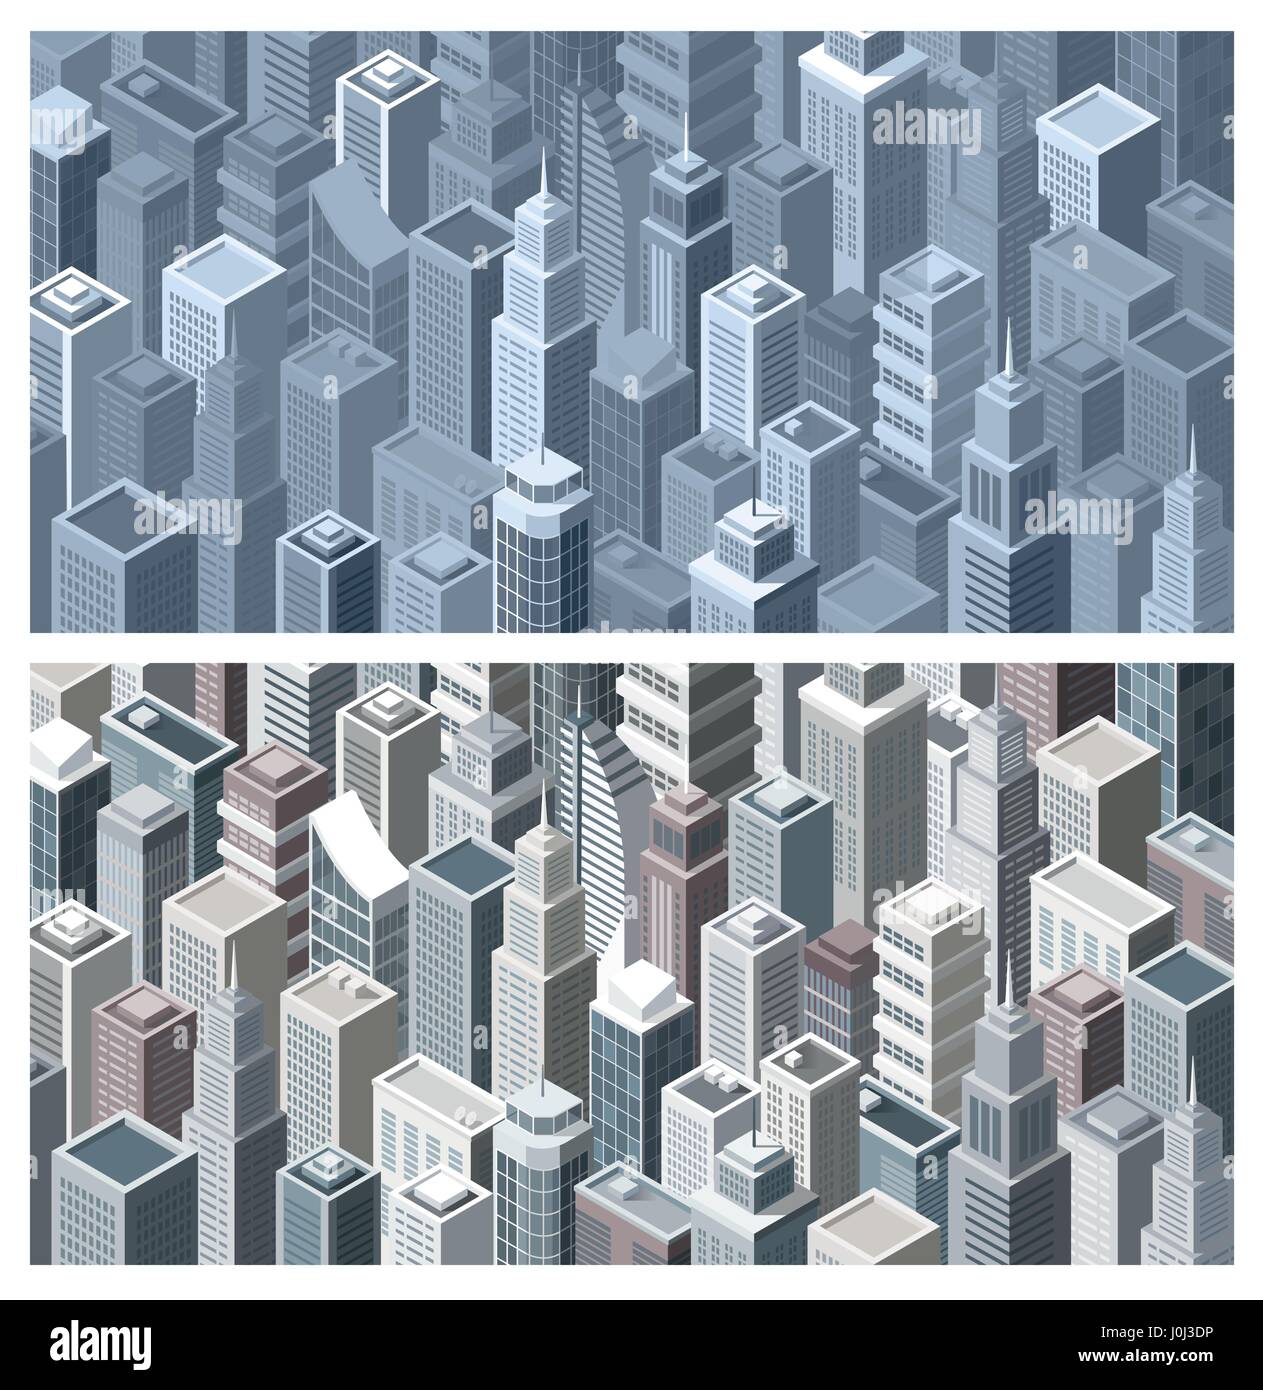 Heutige Stadt Banner mit modernen isometrische Gebäuden, Luftbild Stock Vektor